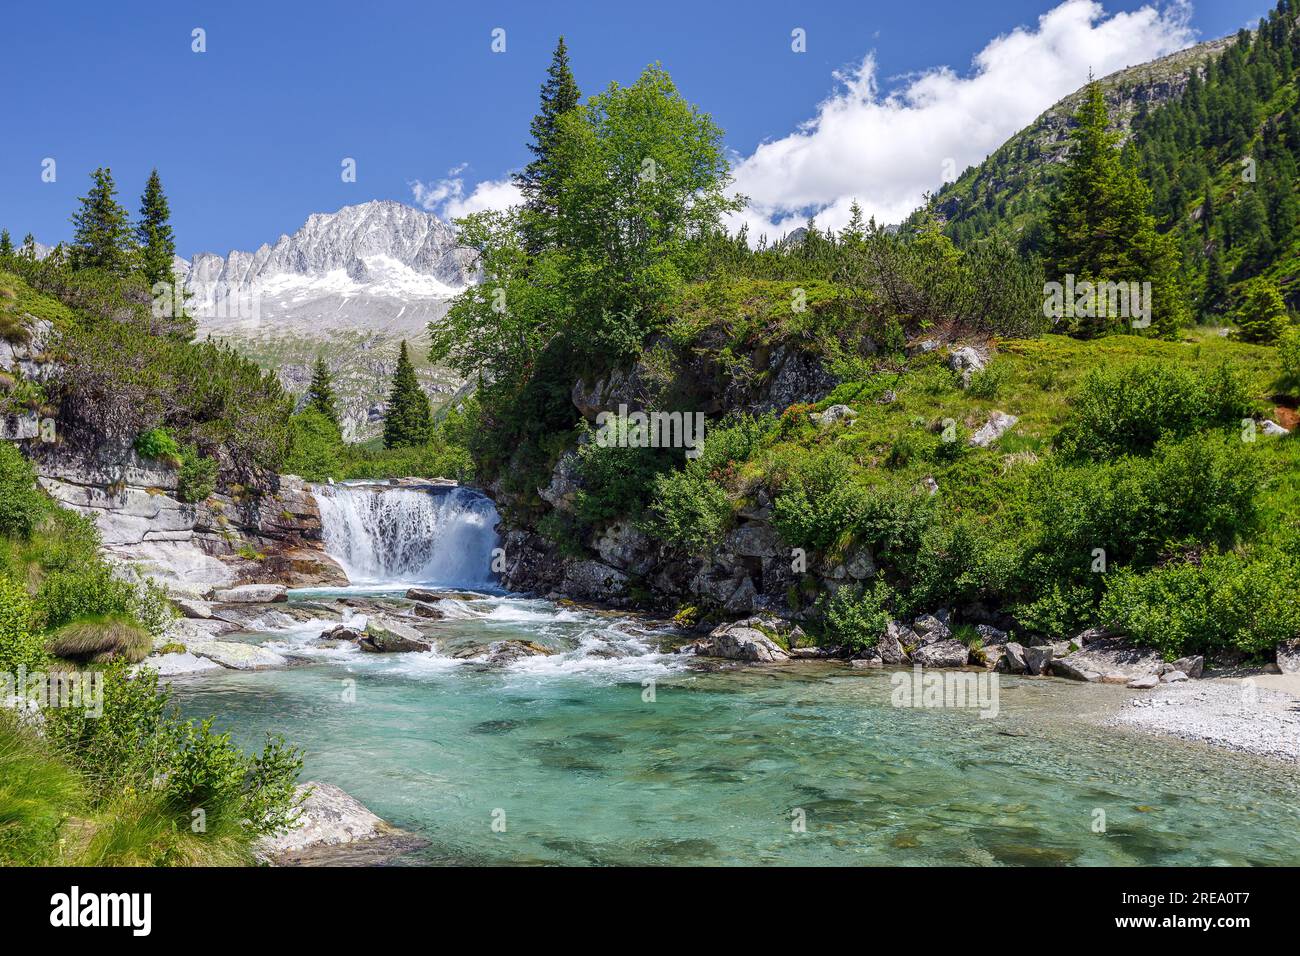 River Chiese, waterfall. Val di Fumo alpine valley. Carè Alto mountain peak. Trentino. Italian Alps. Europe. Stock Photo